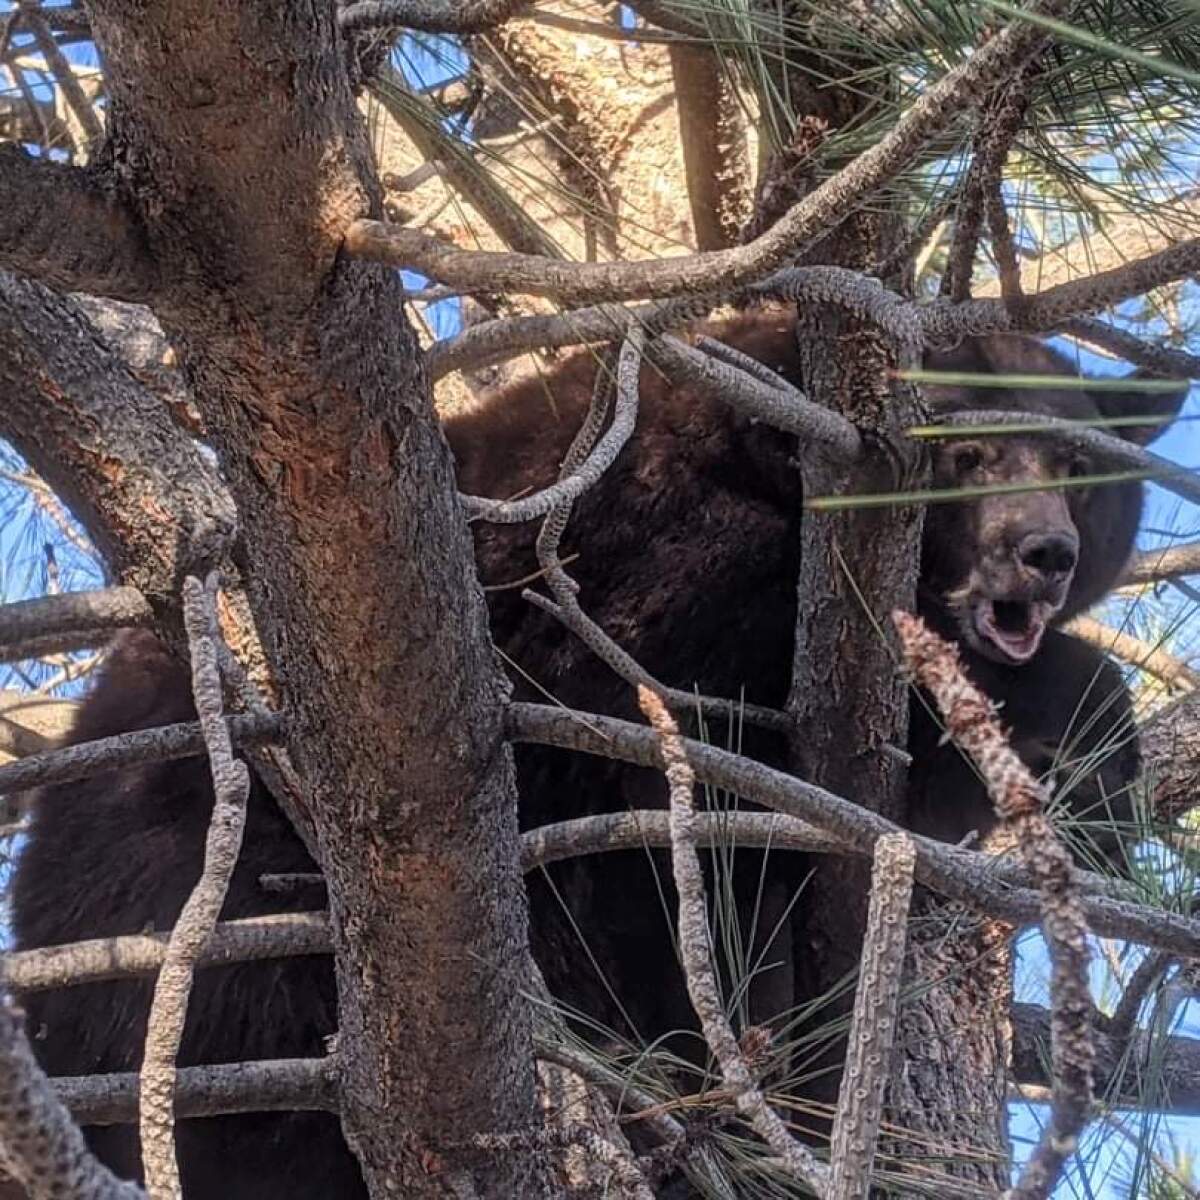 A black bear in a tree